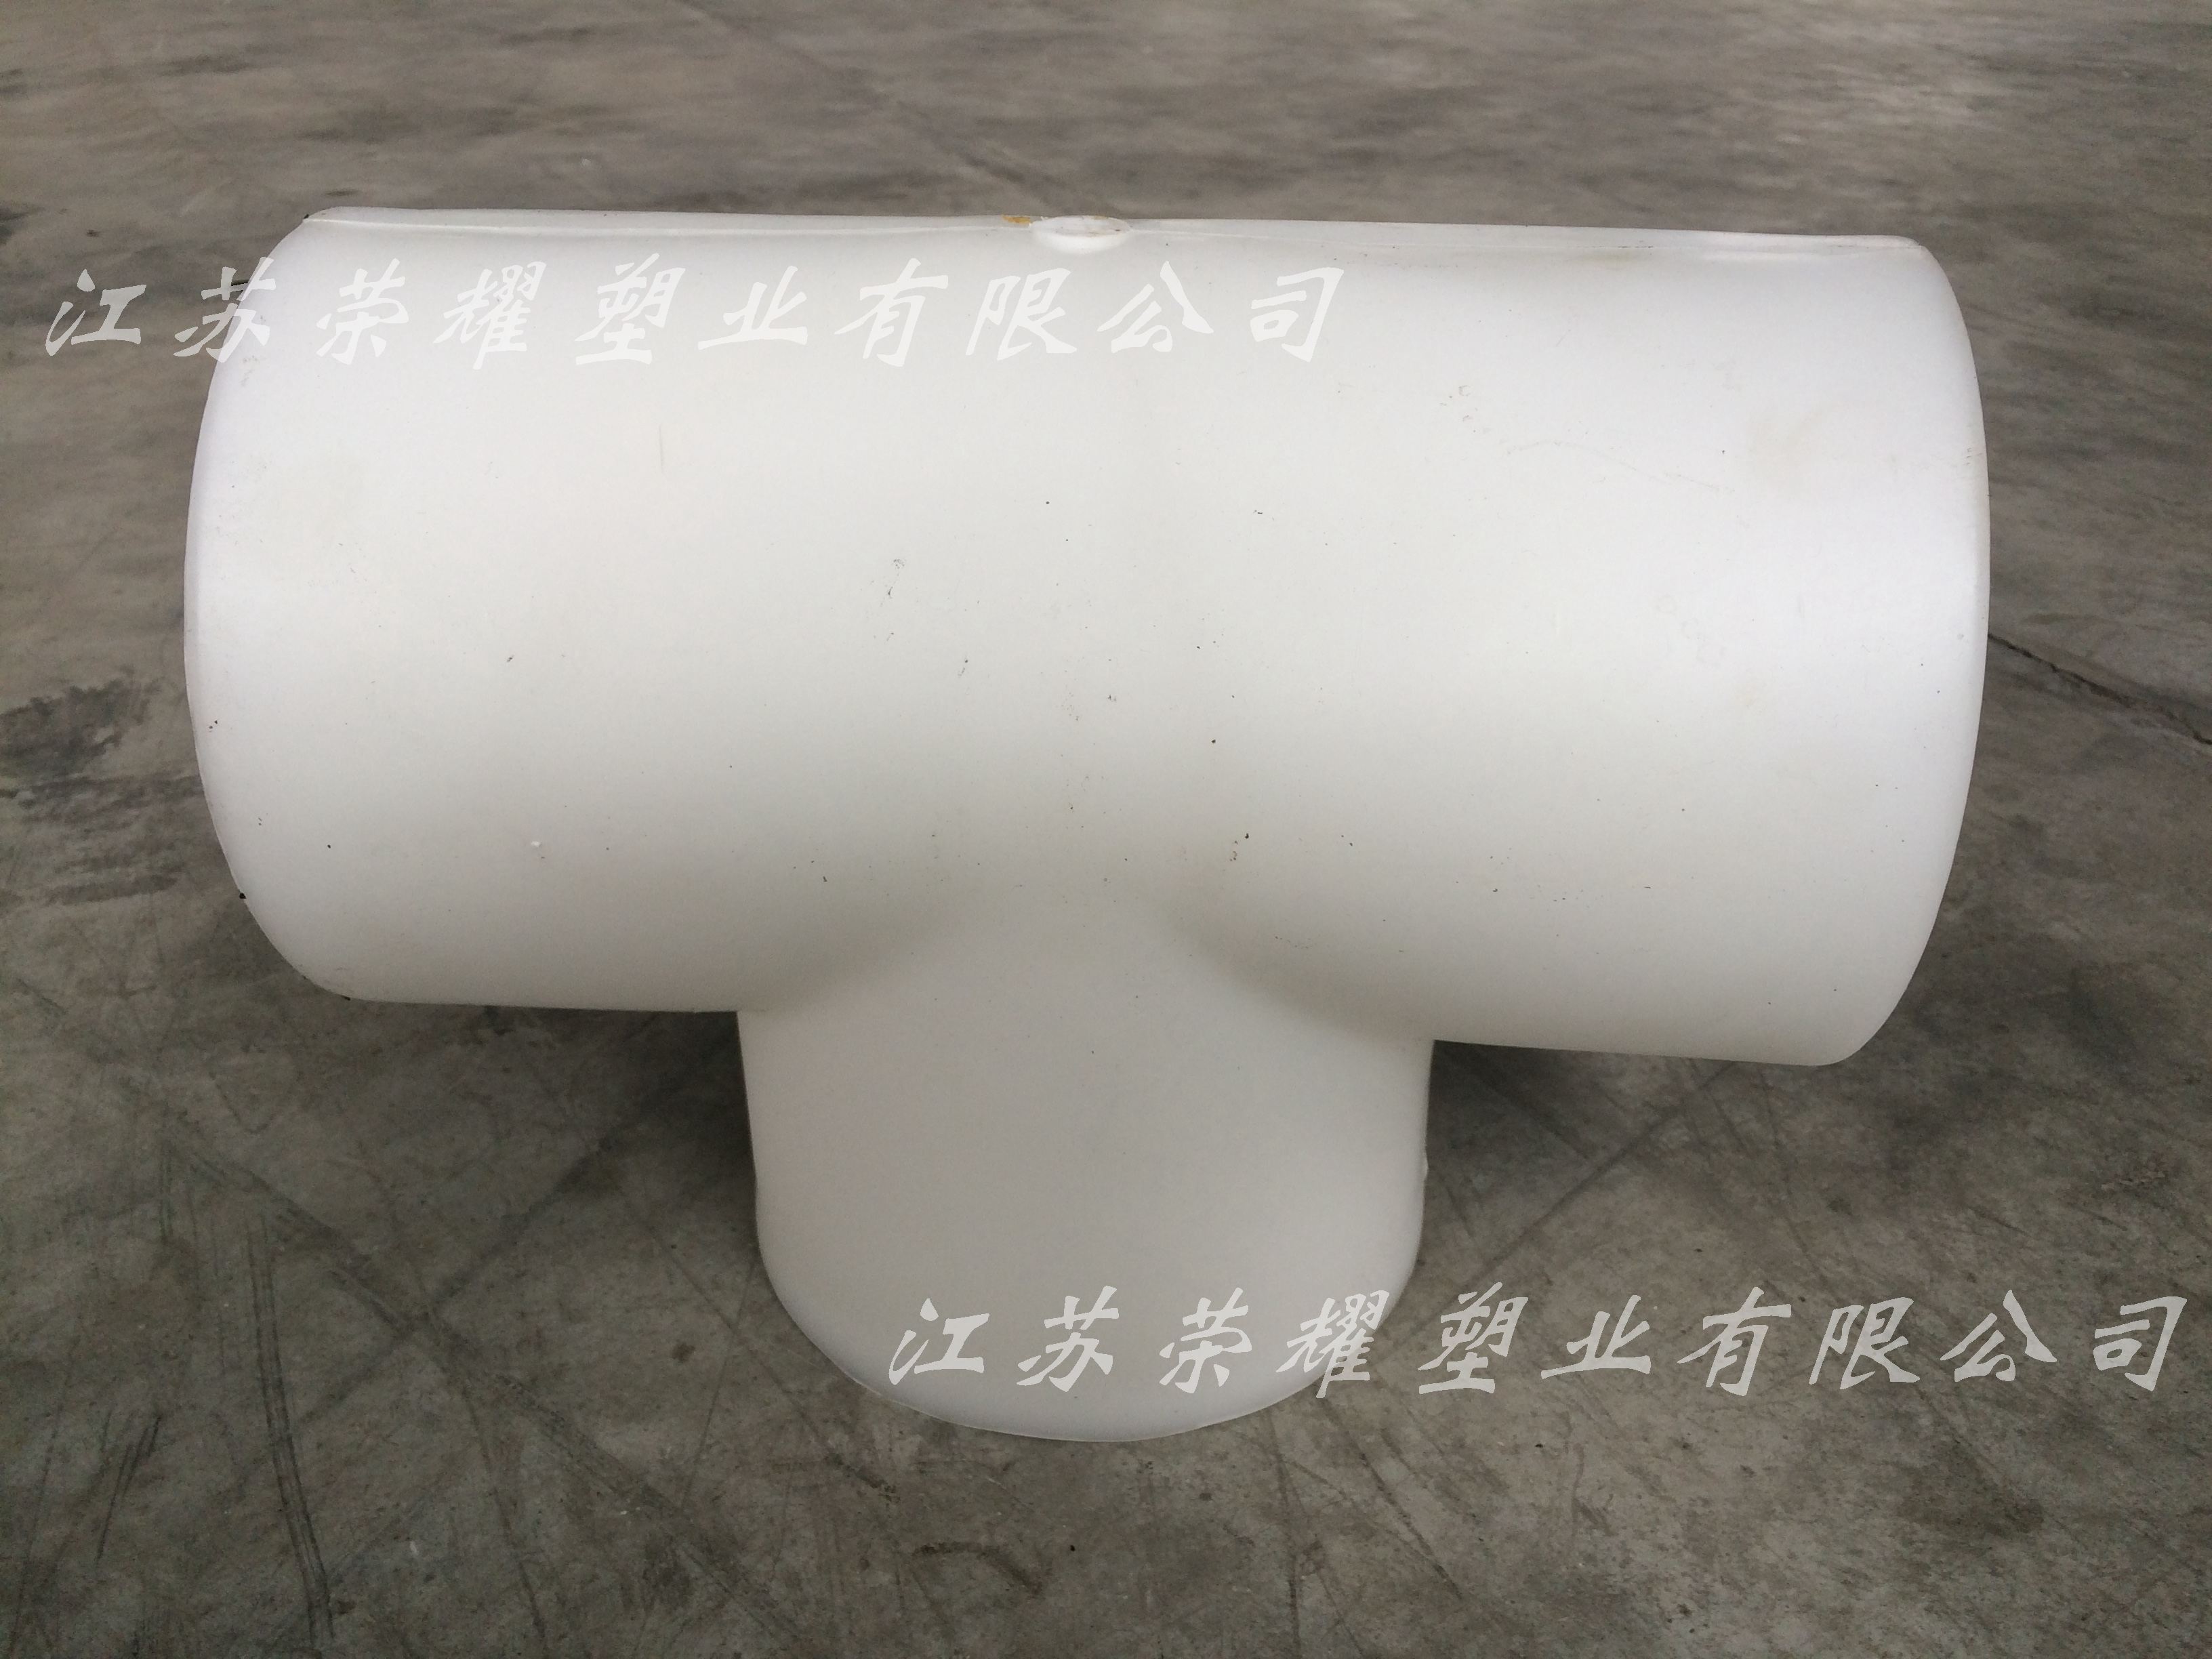 化工、化纤企业可以选择江苏荣耀塑业生产的PP管